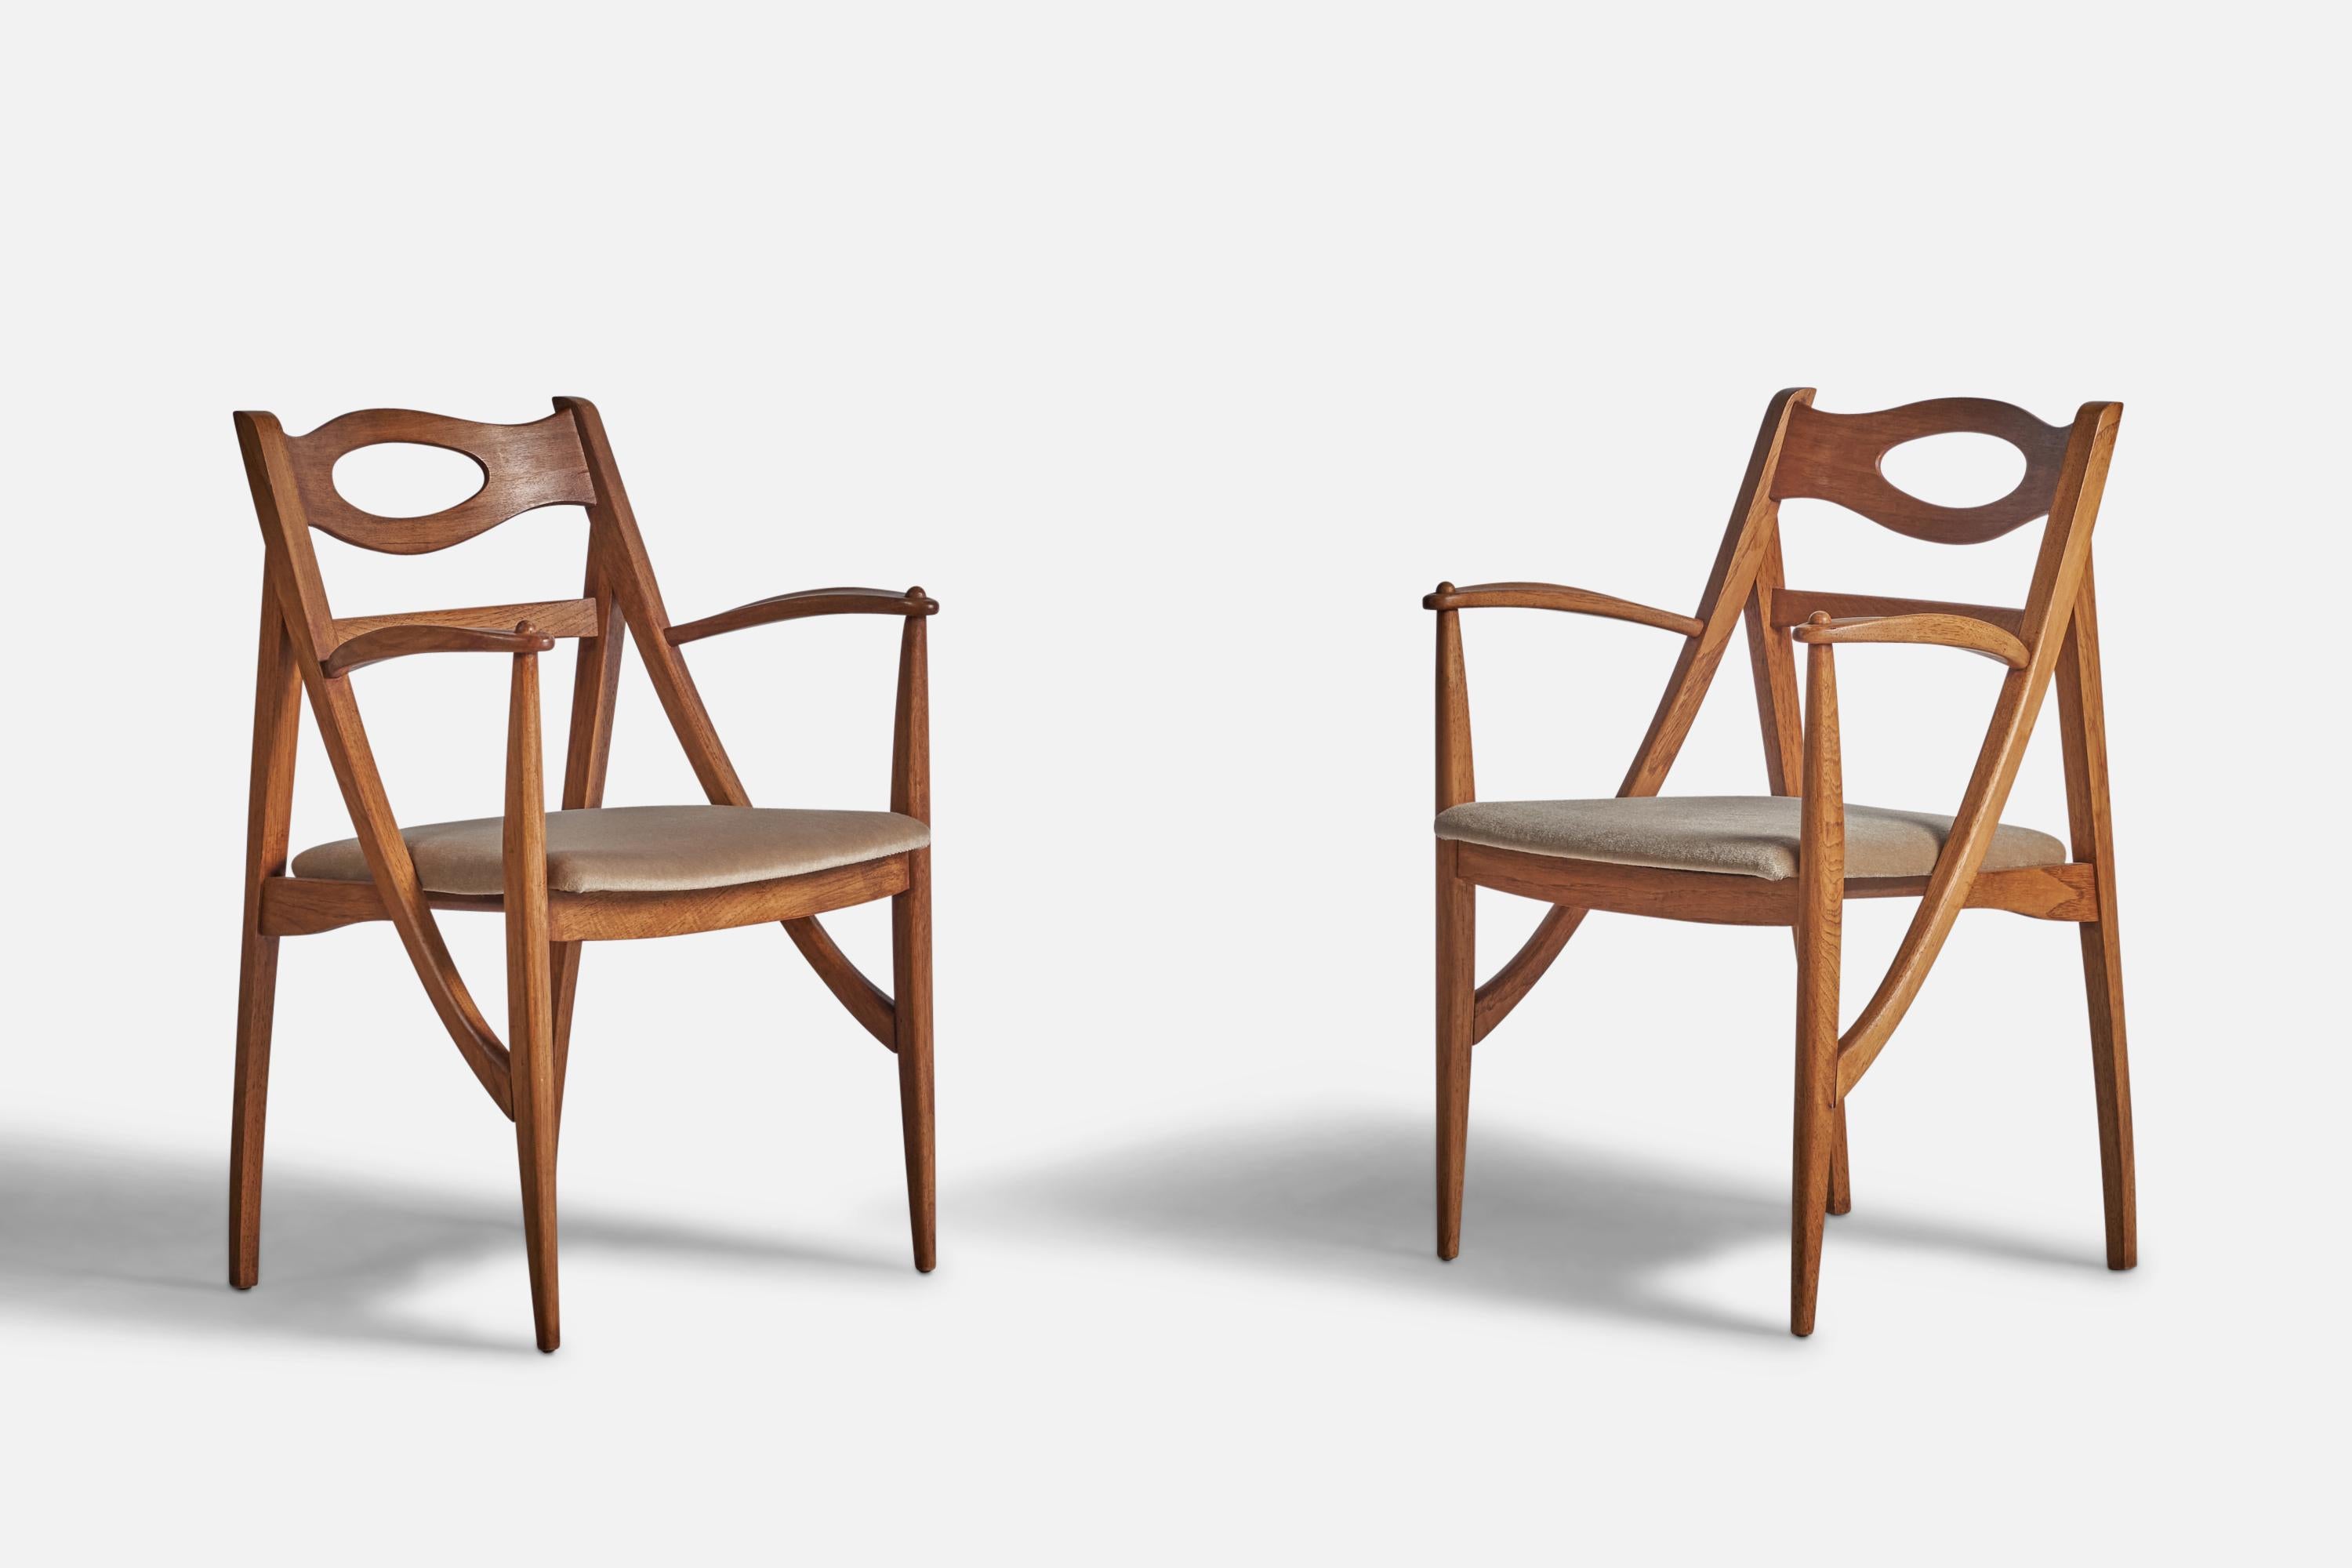 Paire de chaises d'appoint en chêne et mohair beige conçues et produites par Drexel, États-Unis, années 1950.

Hauteur du siège de 17 pouces
Mohair beige neuf.